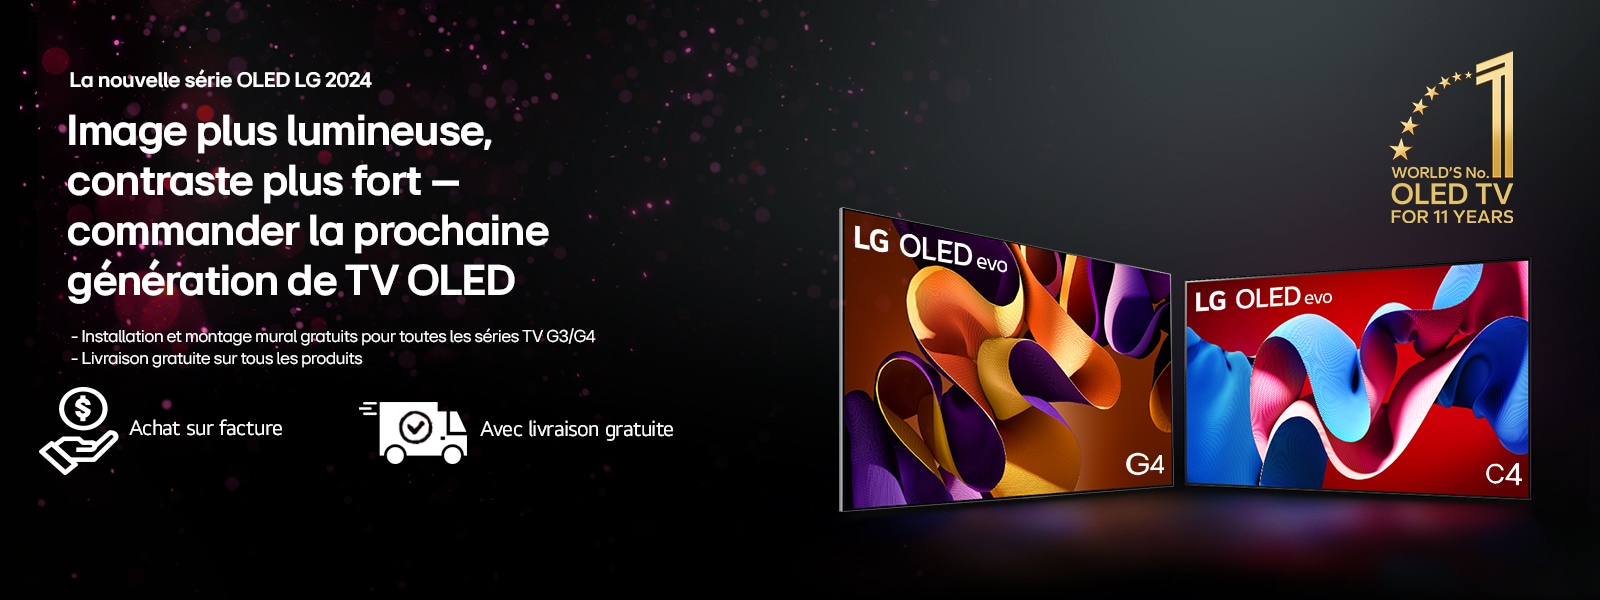 La nouvelle série OLED LG 2024